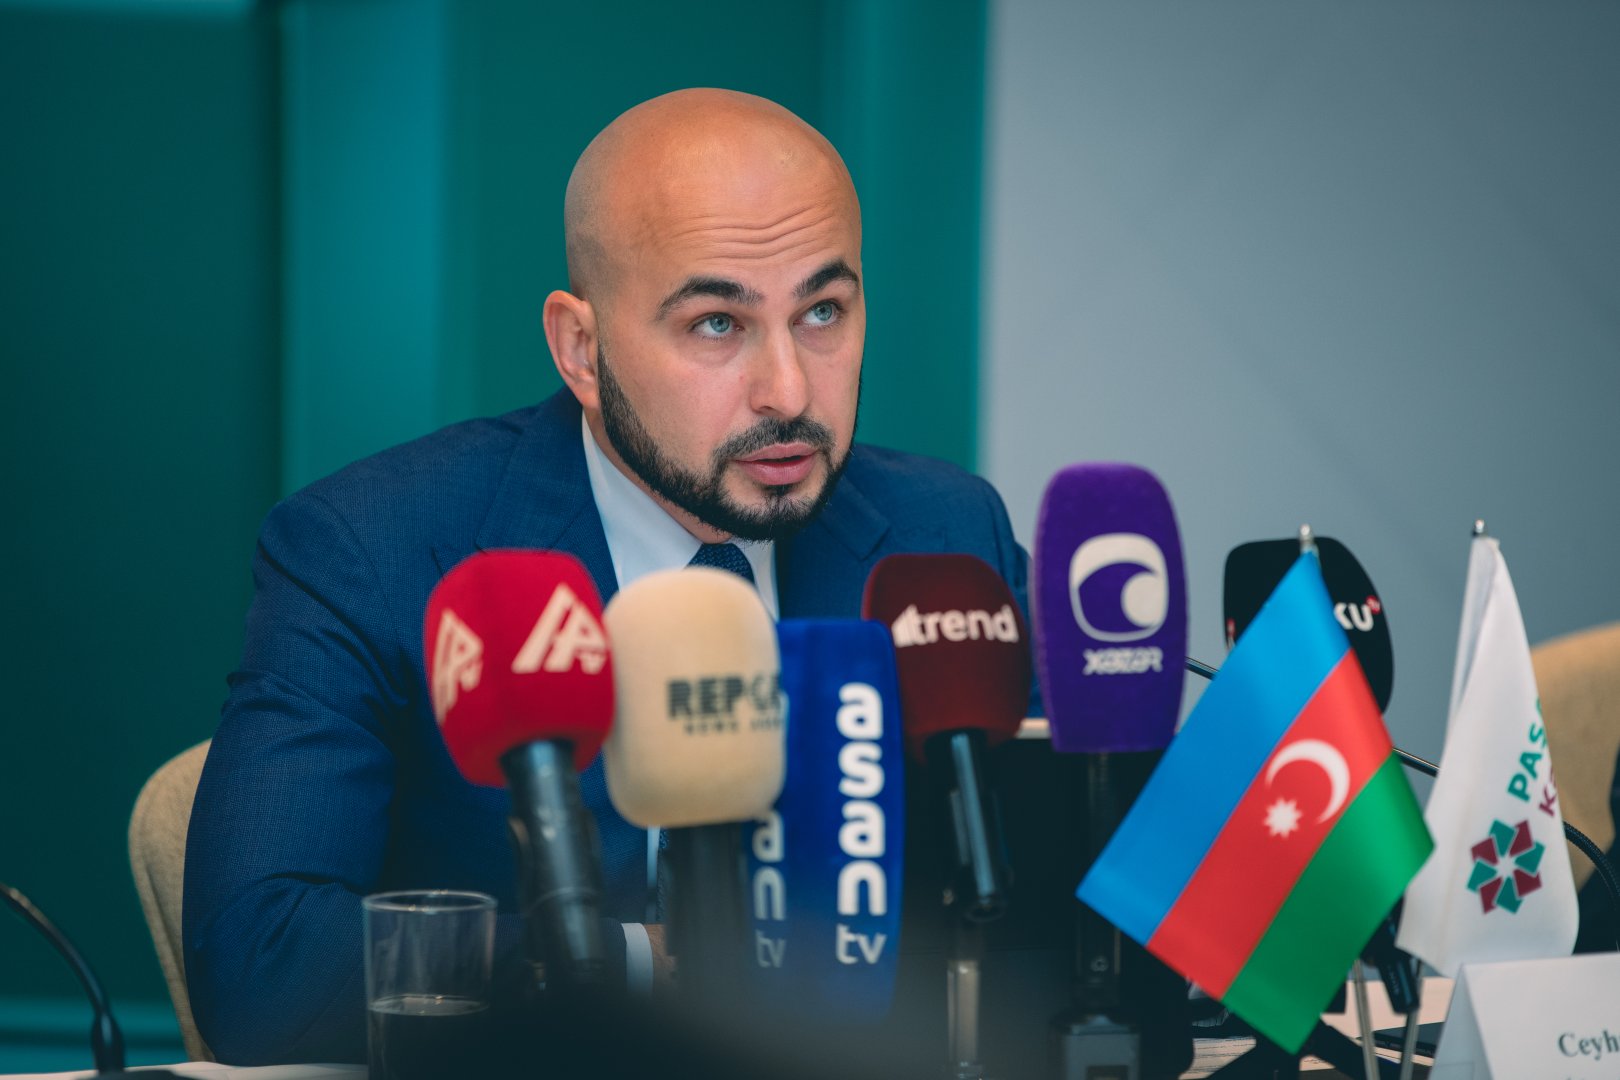 Иностранные инвесторы начали активную деятельность на финансовом рынке Азербайджана - PASHA Capital